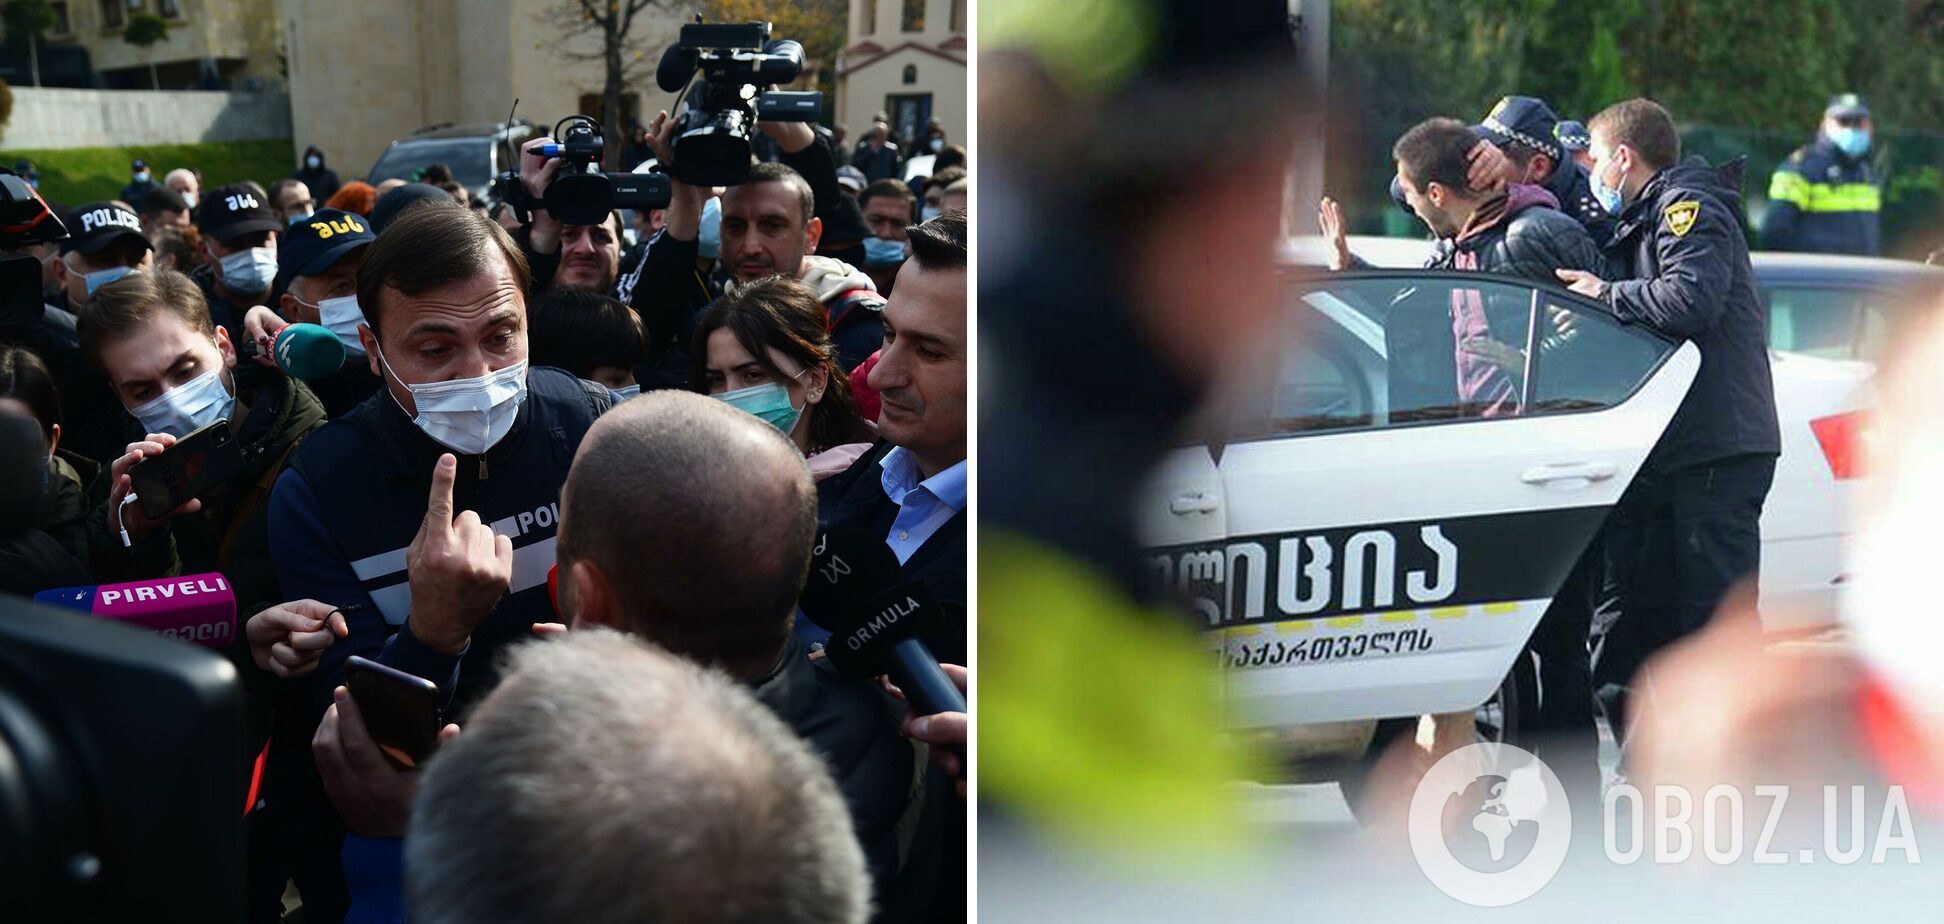 Митинги в поддержку Саакашвили переросли в противостояния  активистов с полицией